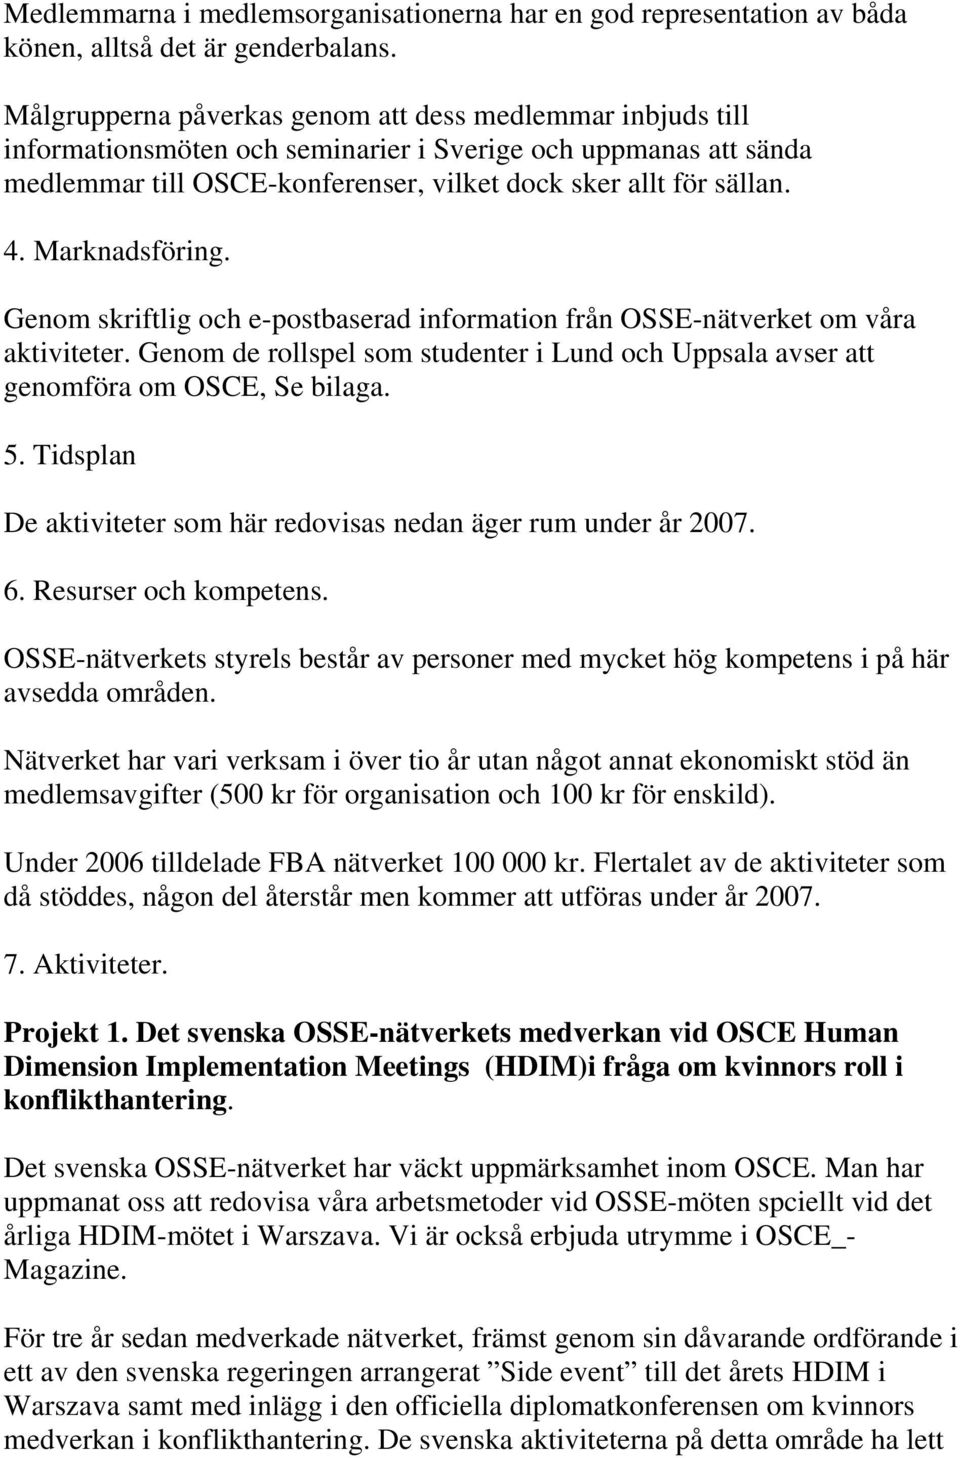 Marknadsföring. Genom skriftlig och e-postbaserad information från OSSE-nätverket om våra aktiviteter. Genom de rollspel som studenter i Lund och Uppsala avser att genomföra om OSCE, Se bilaga. 5.